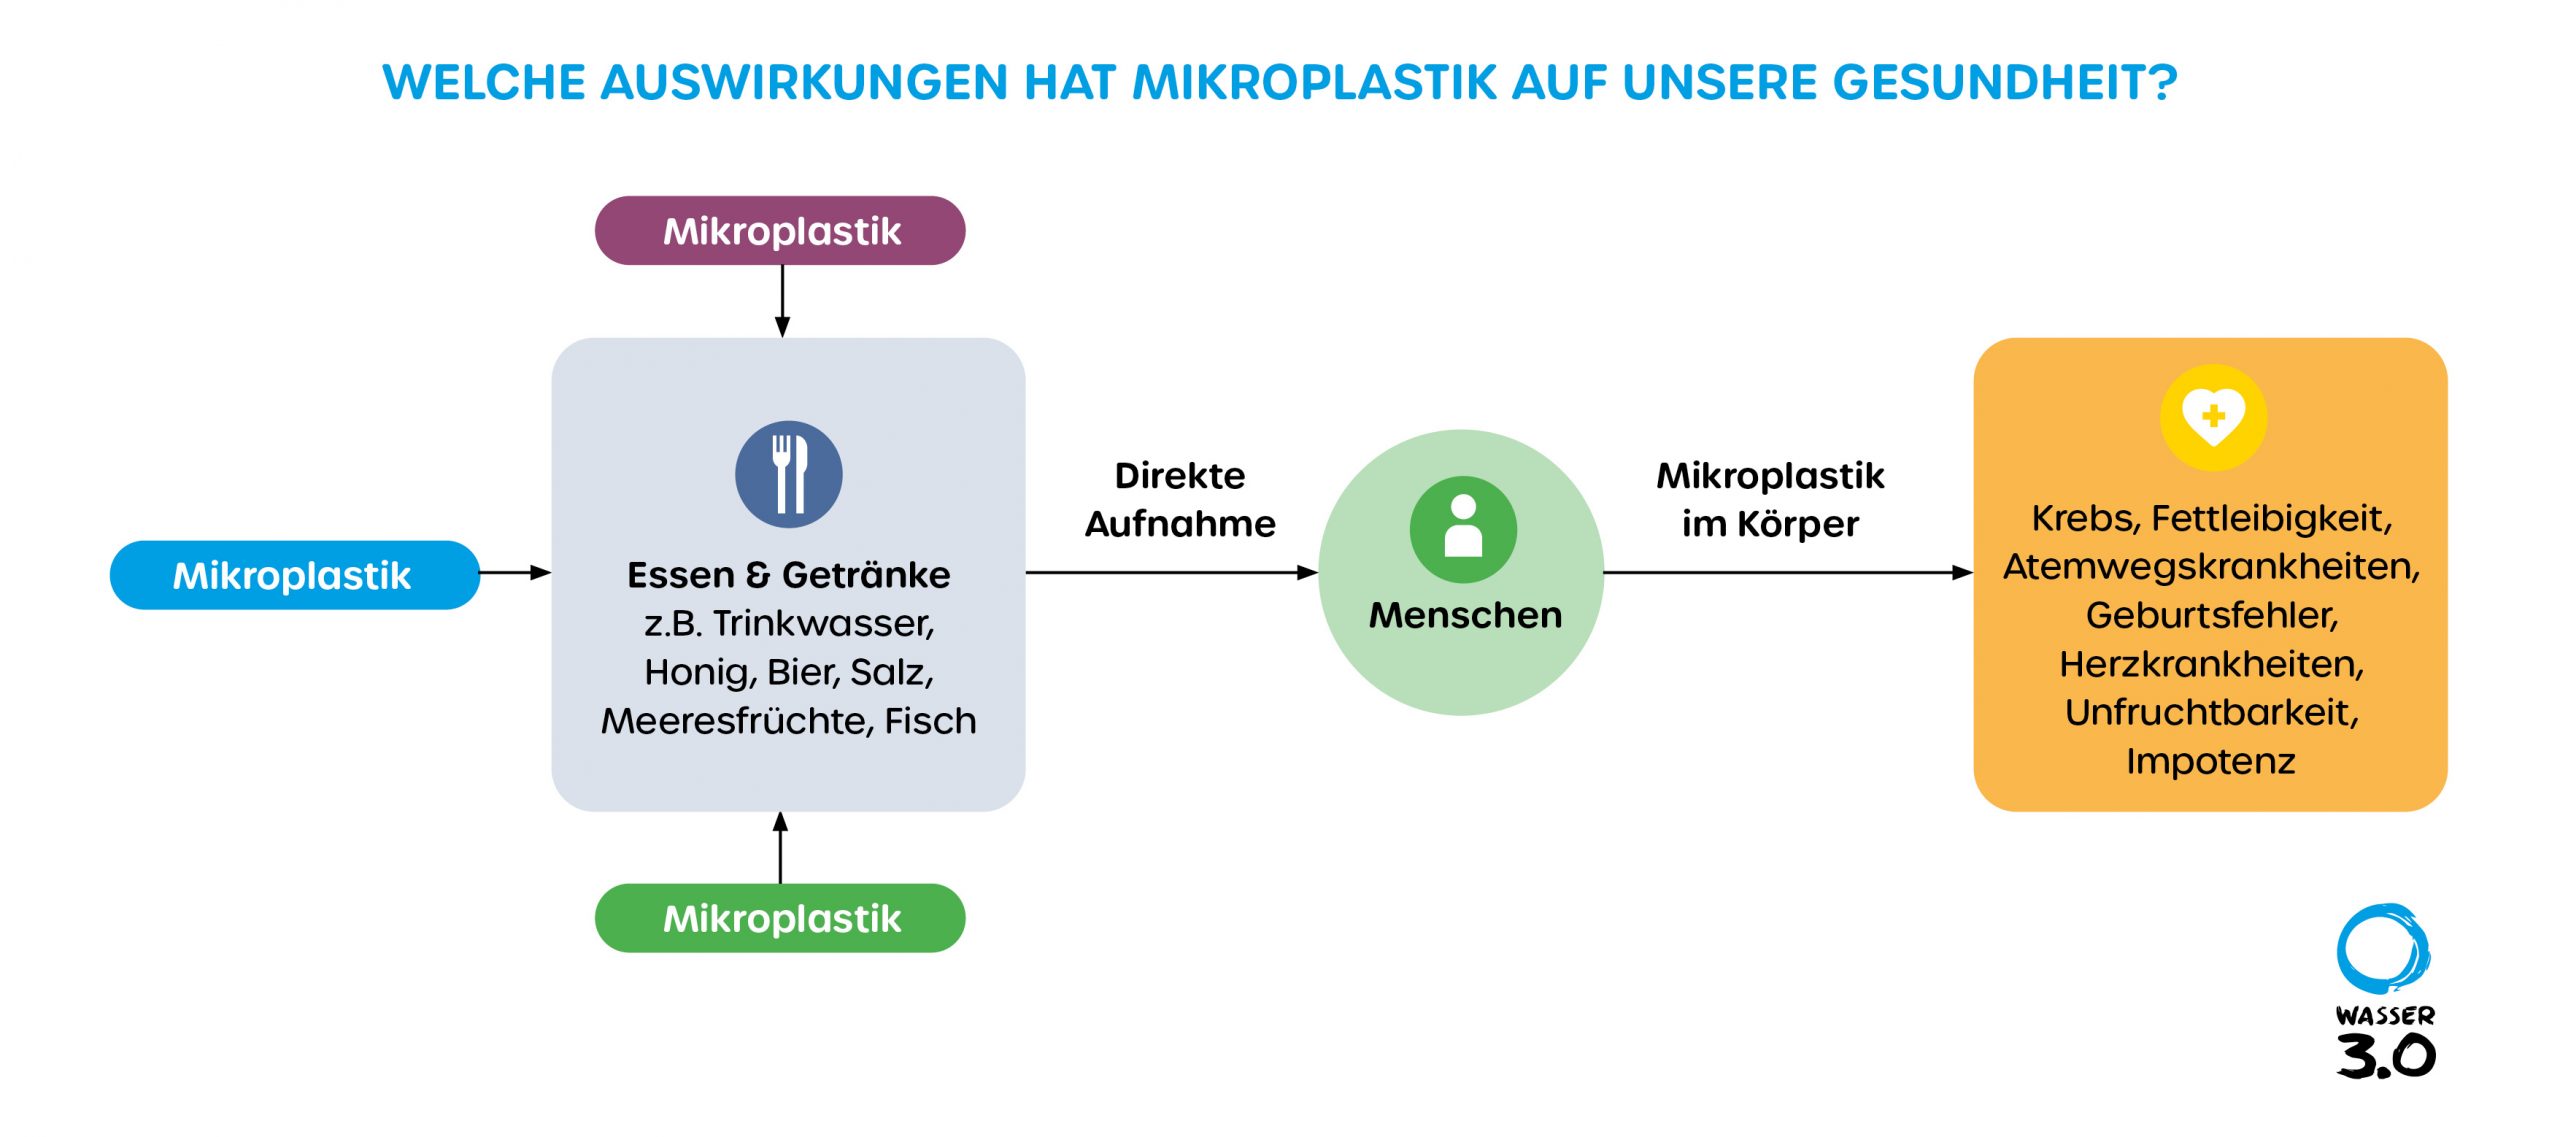 Beispiel für die Auswirkungen auf die menschliche Gesundheit durch die Aufnahme von Mikroplastik © Wasser 3.0.